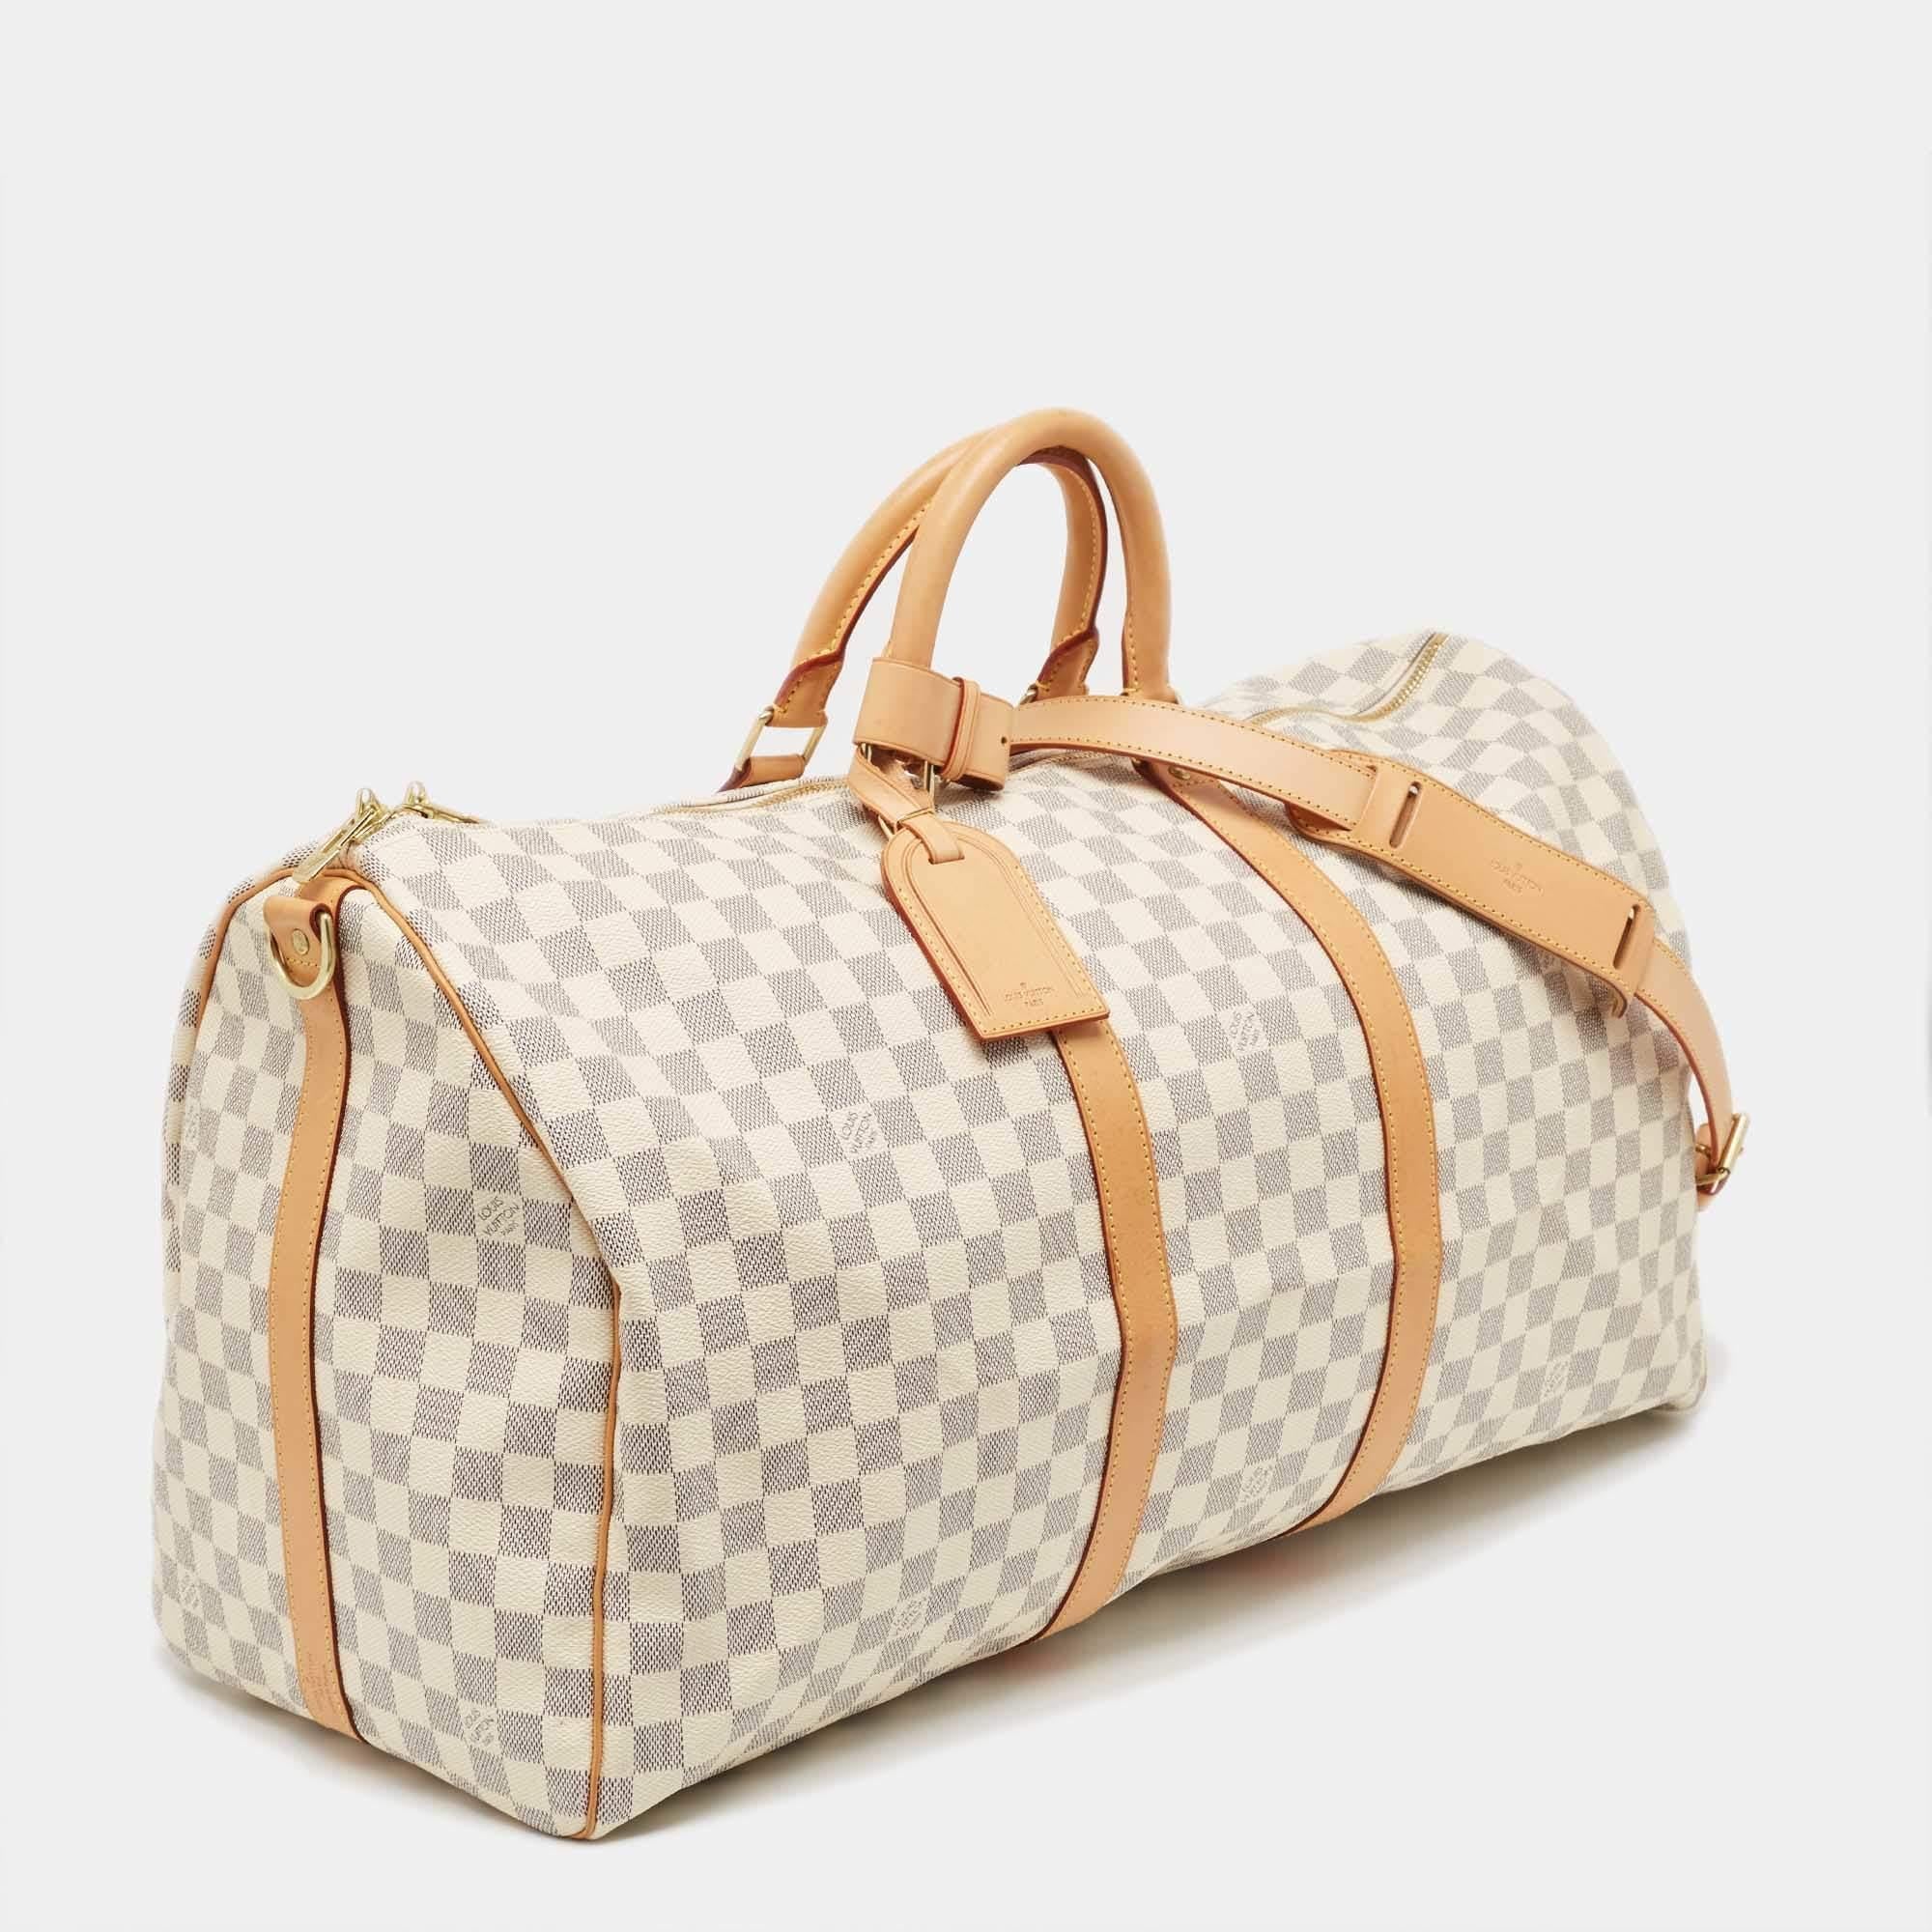 Louis Vuitton Damier Azur Canvas Keepall Bandouliere 55 Bag In Excellent Condition For Sale In Dubai, Al Qouz 2